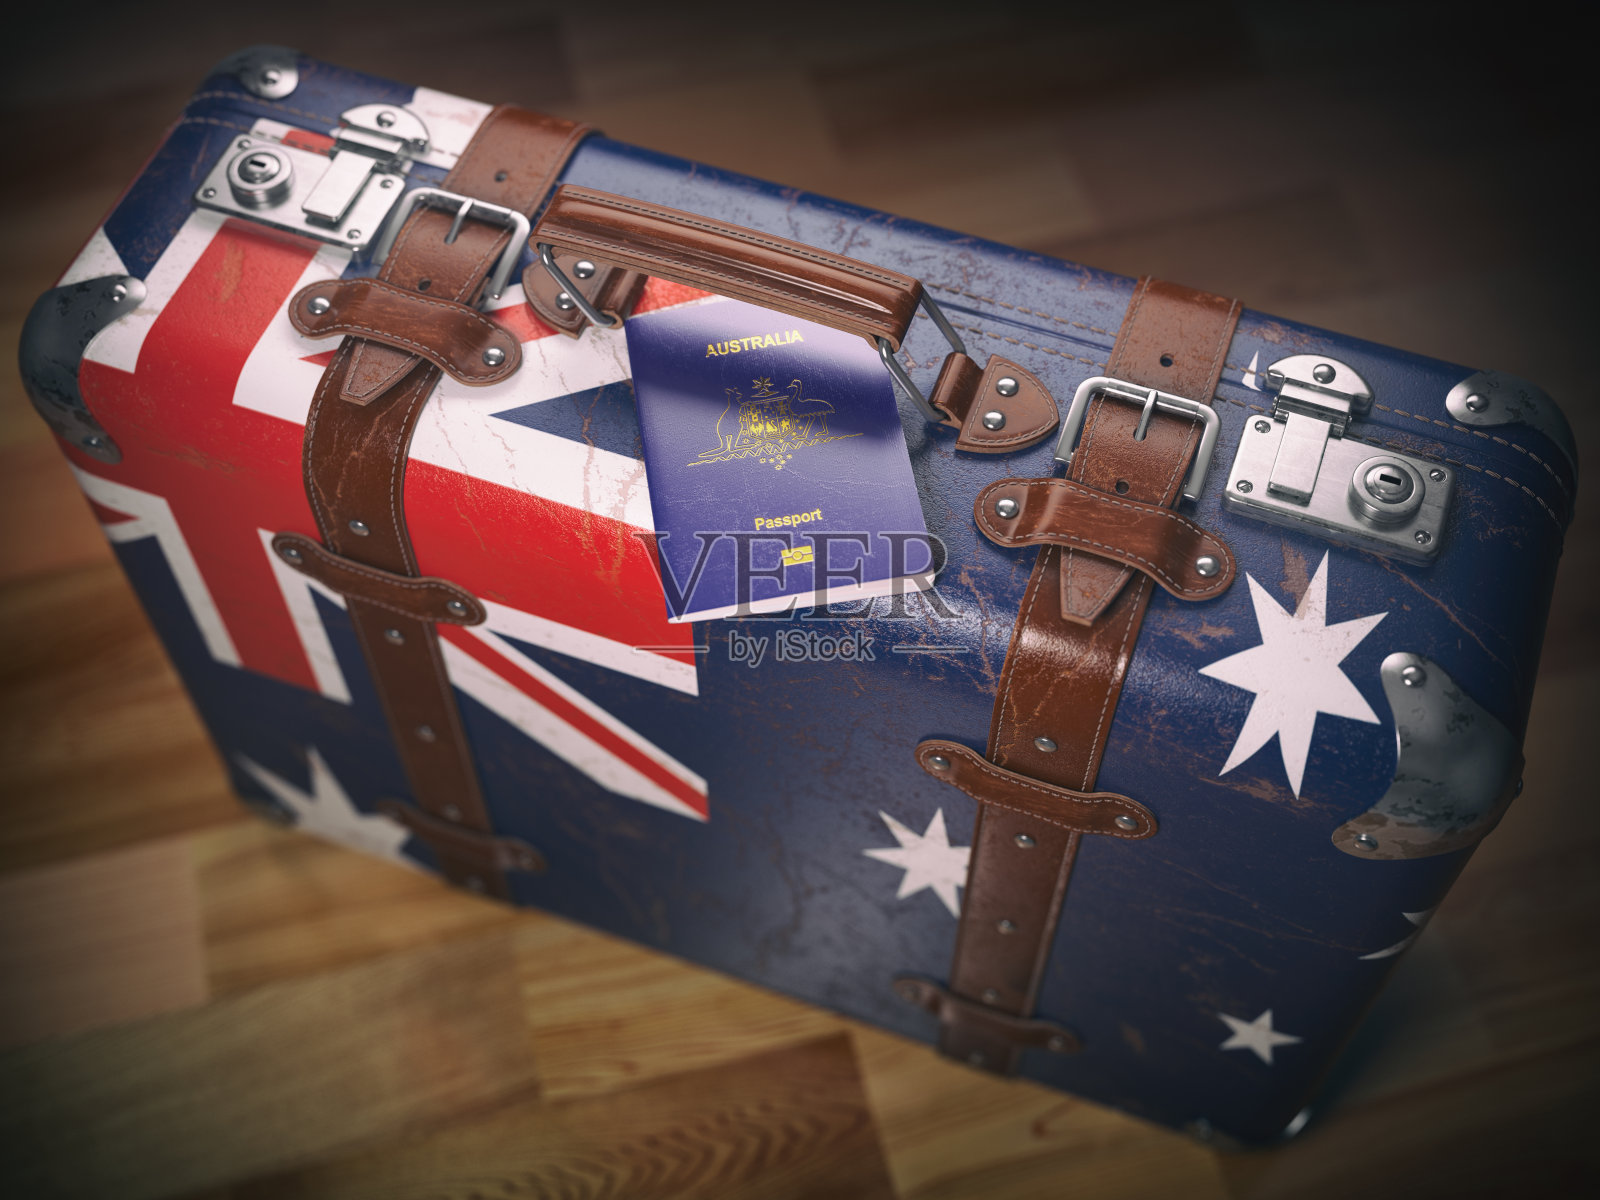 澳洲护照及带有澳洲国旗的旅行箱。照片摄影图片